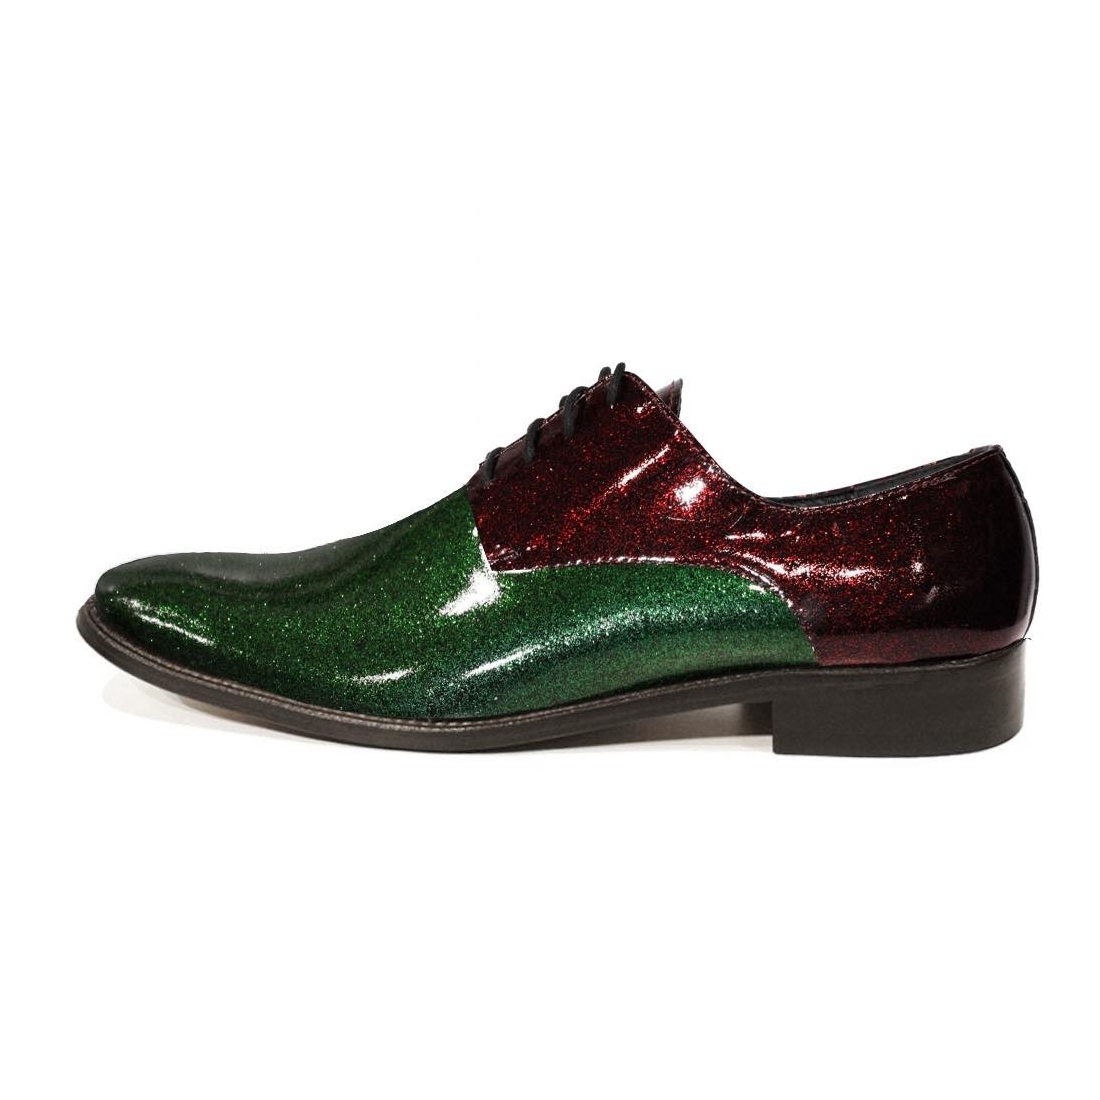 Modello Luccichio - Buty Klasyczne - Handmade Colorful Italian Leather Shoes